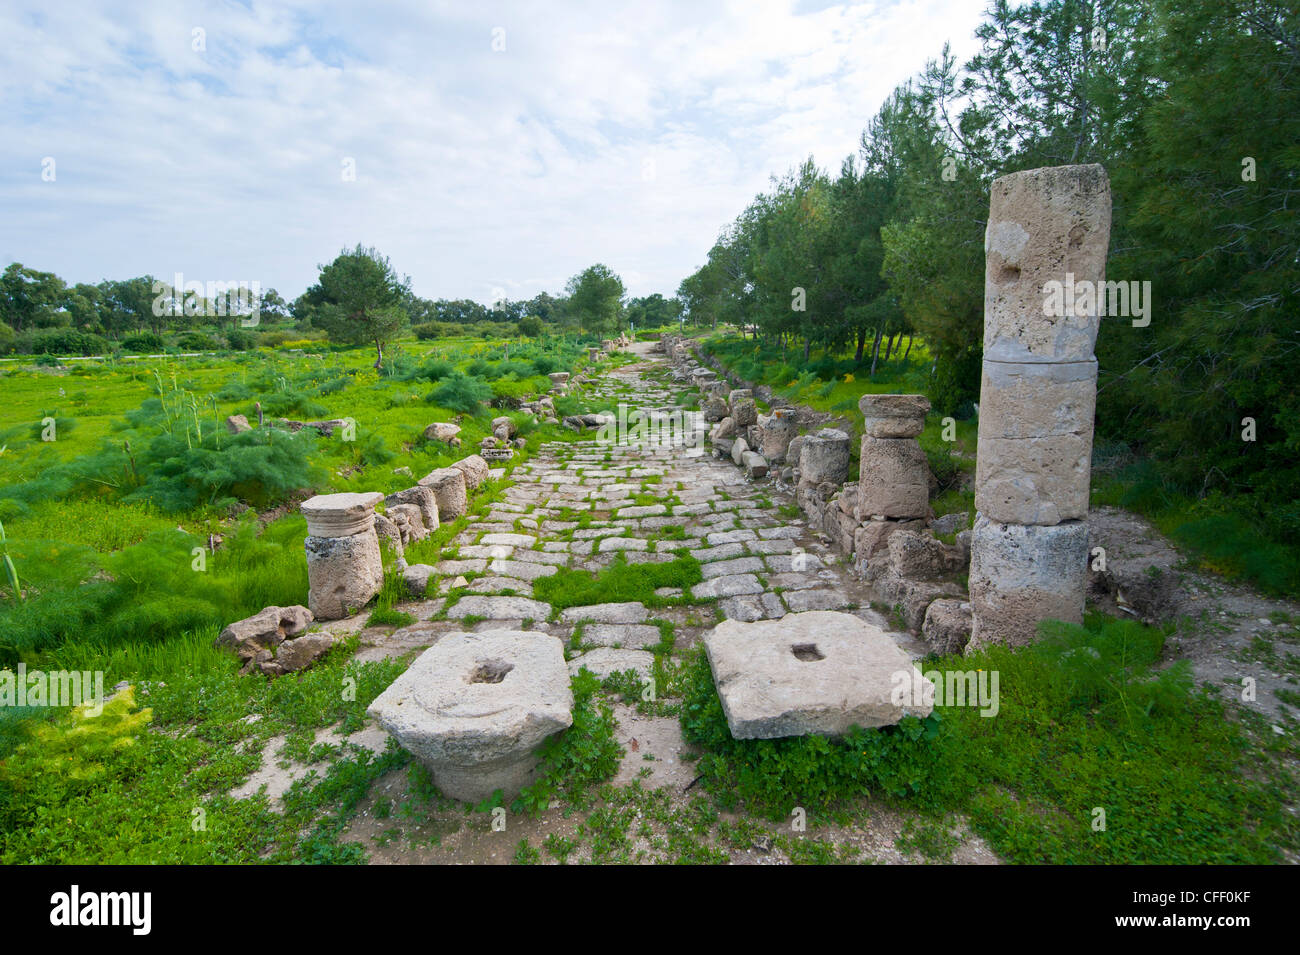 Die römischen Ruinen von Salamis, türkischen Teil von Zypern, Europa Stockfoto